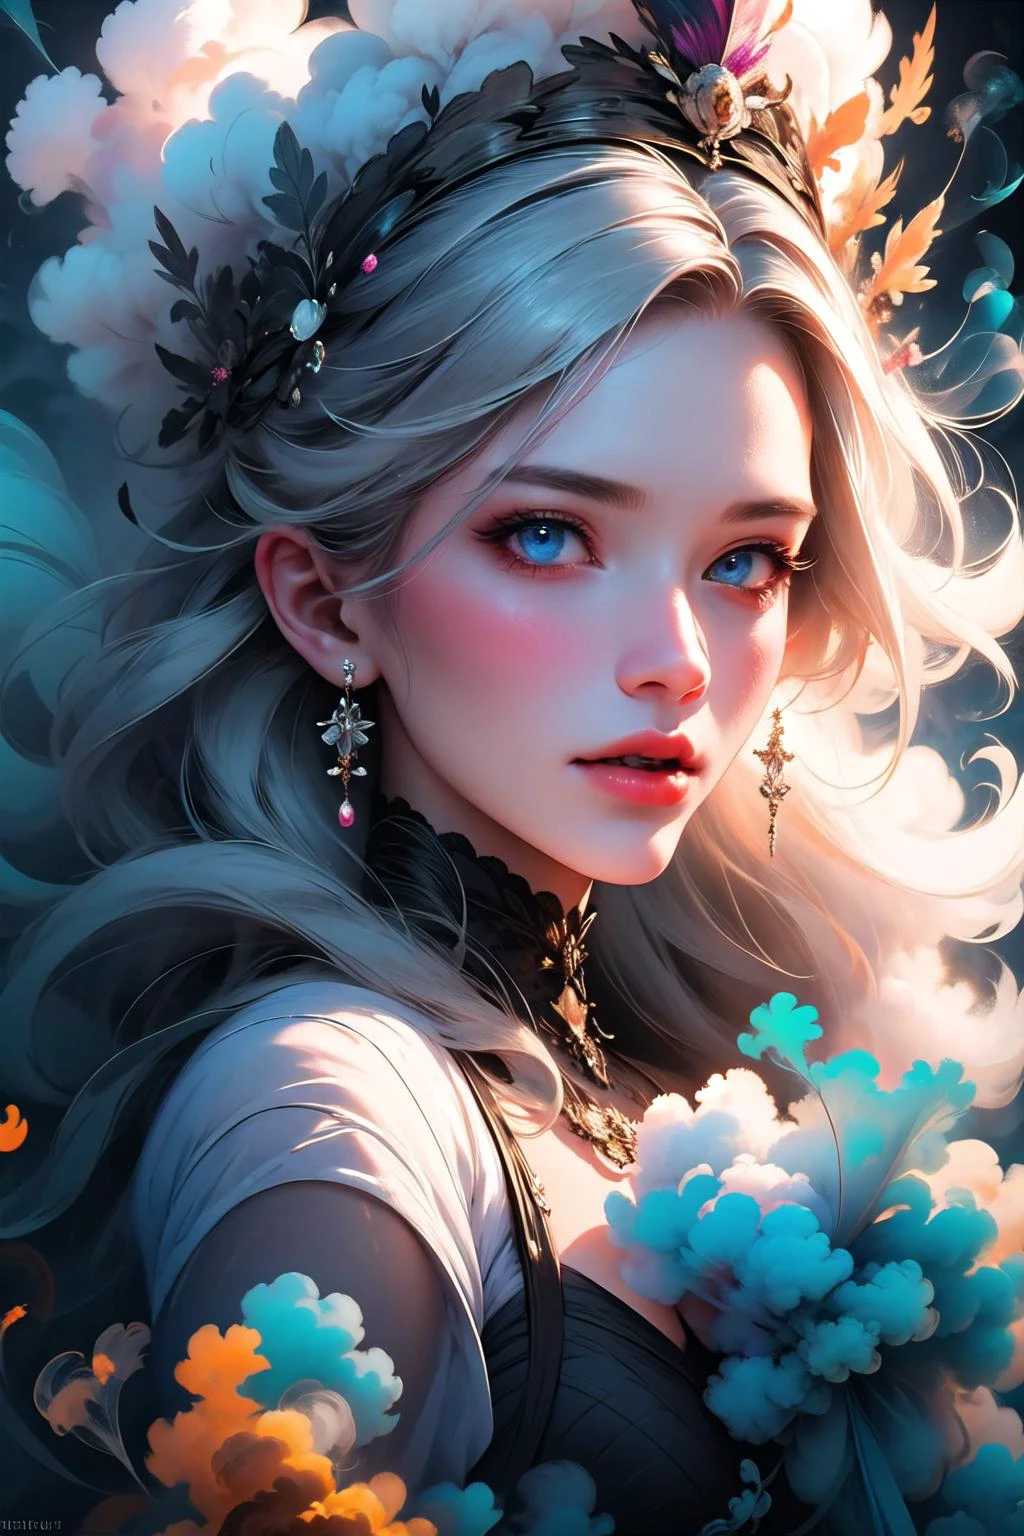 은빛 머리카락을 휘날리는 신비한 여성의 초현실적인 초상화, 파란 눈을 꿰뚫는, 그리고 섬세한 꽃 왕관, 화려한_연기, 연기,